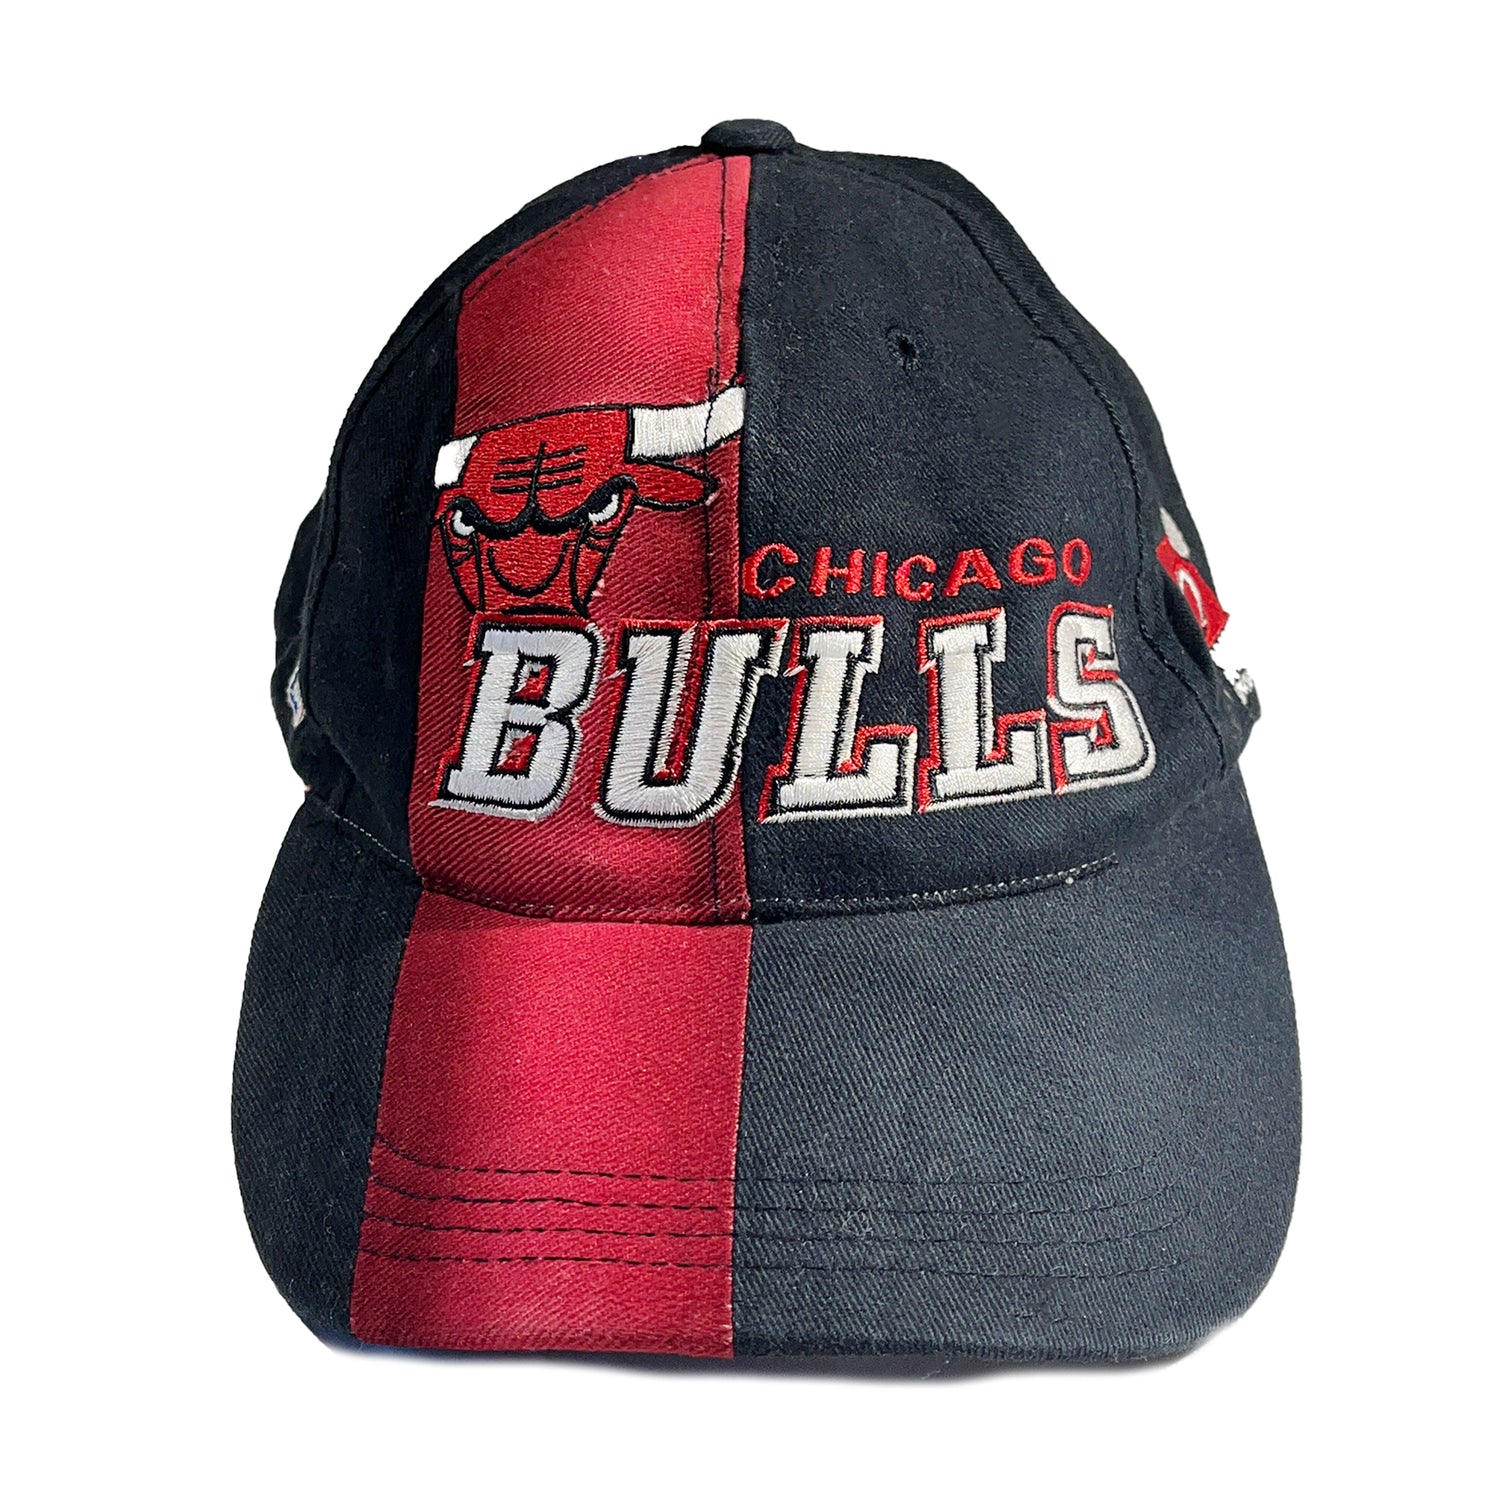 chicago bulls cap vintage